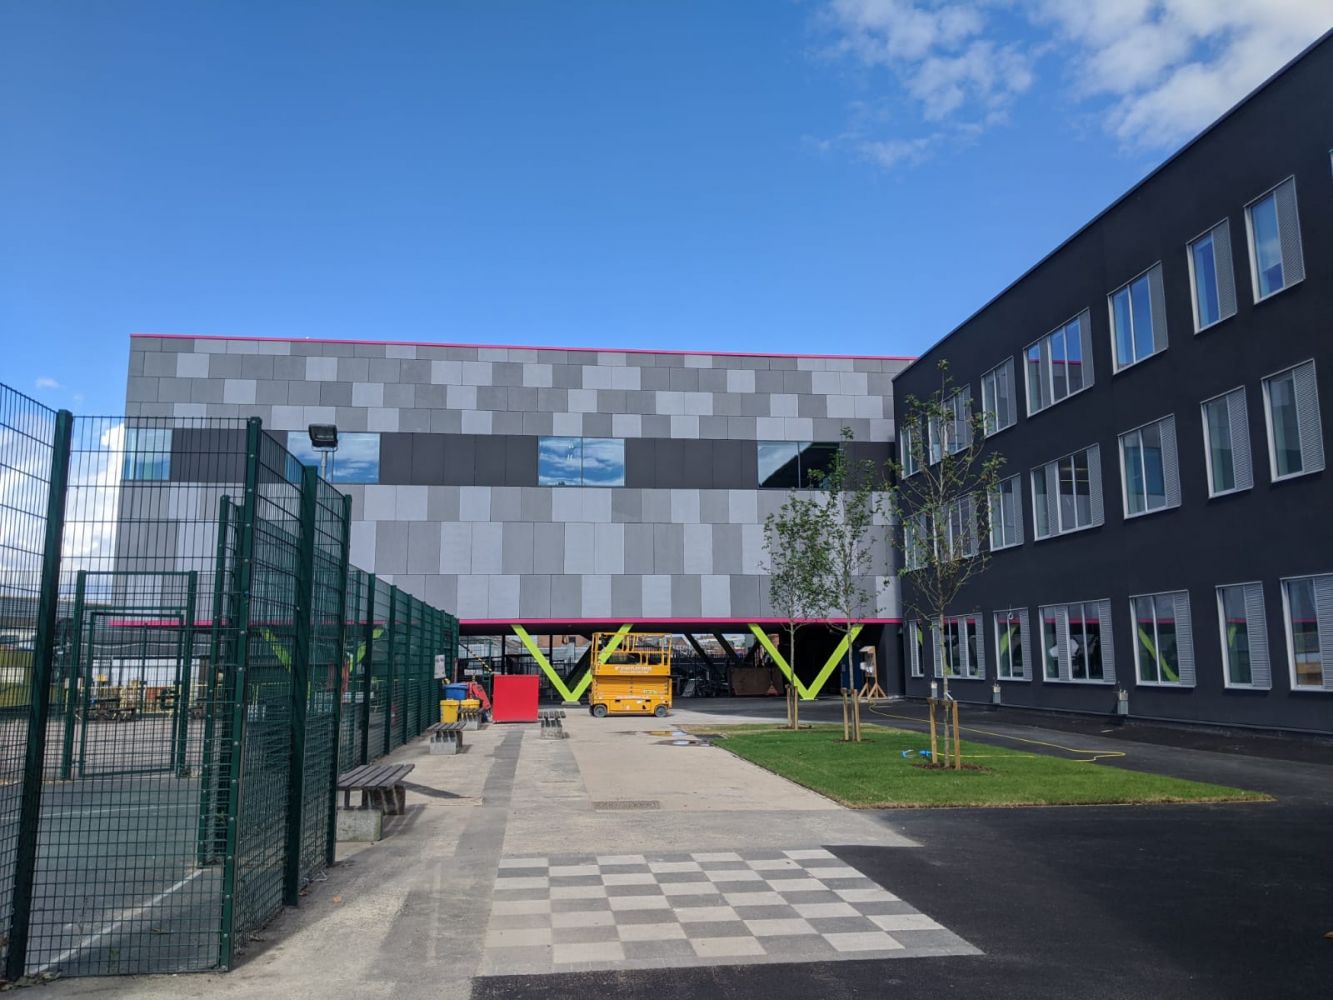 building-work-progress-july-2020-royal-greenwich-trust-school